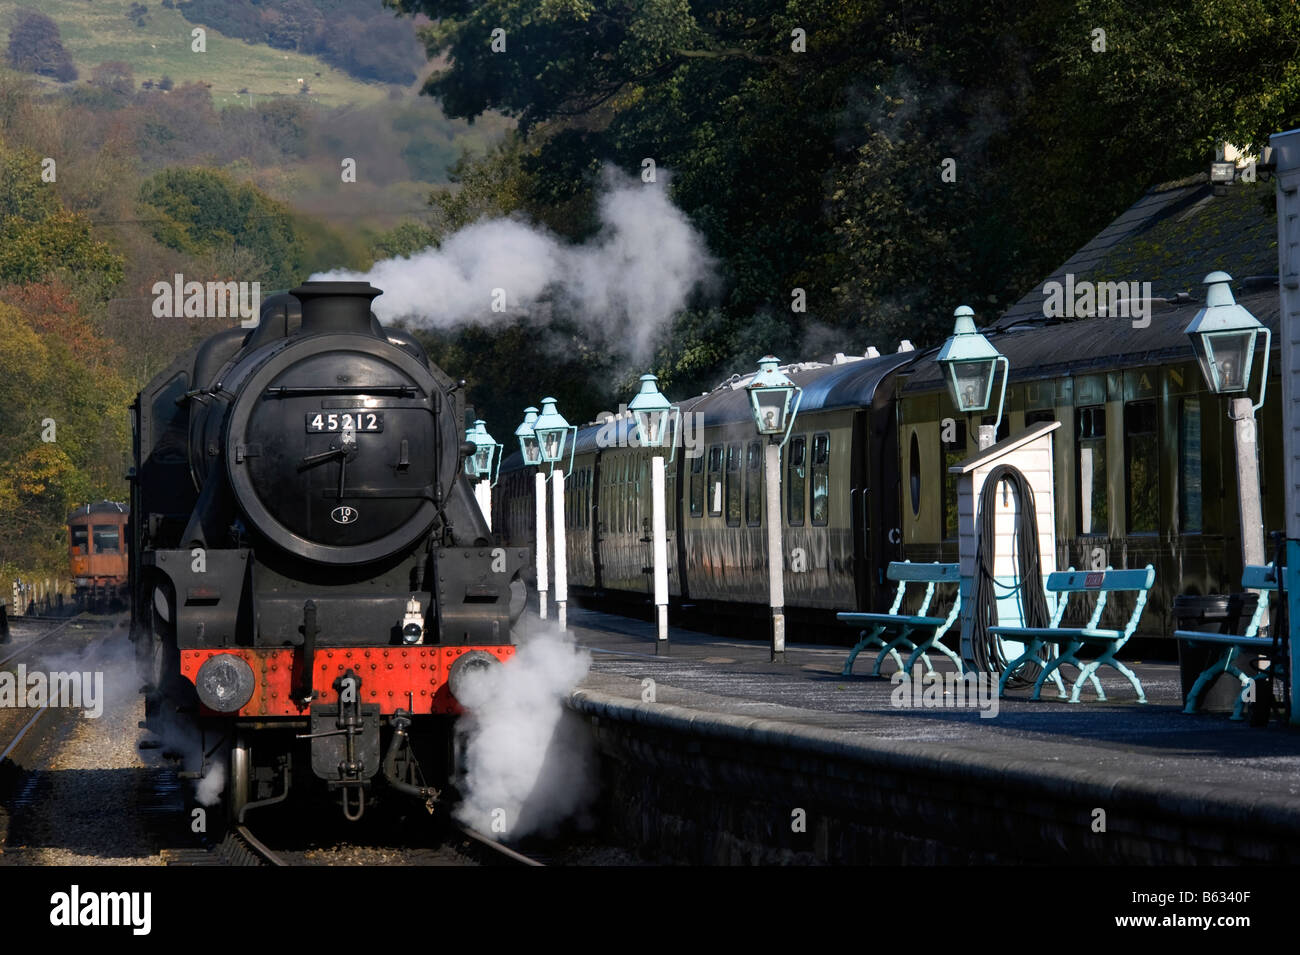 Grosmont stazione ferroviaria, Whitby, North Yorkshire Moors Railway, REGNO UNITO Foto Stock